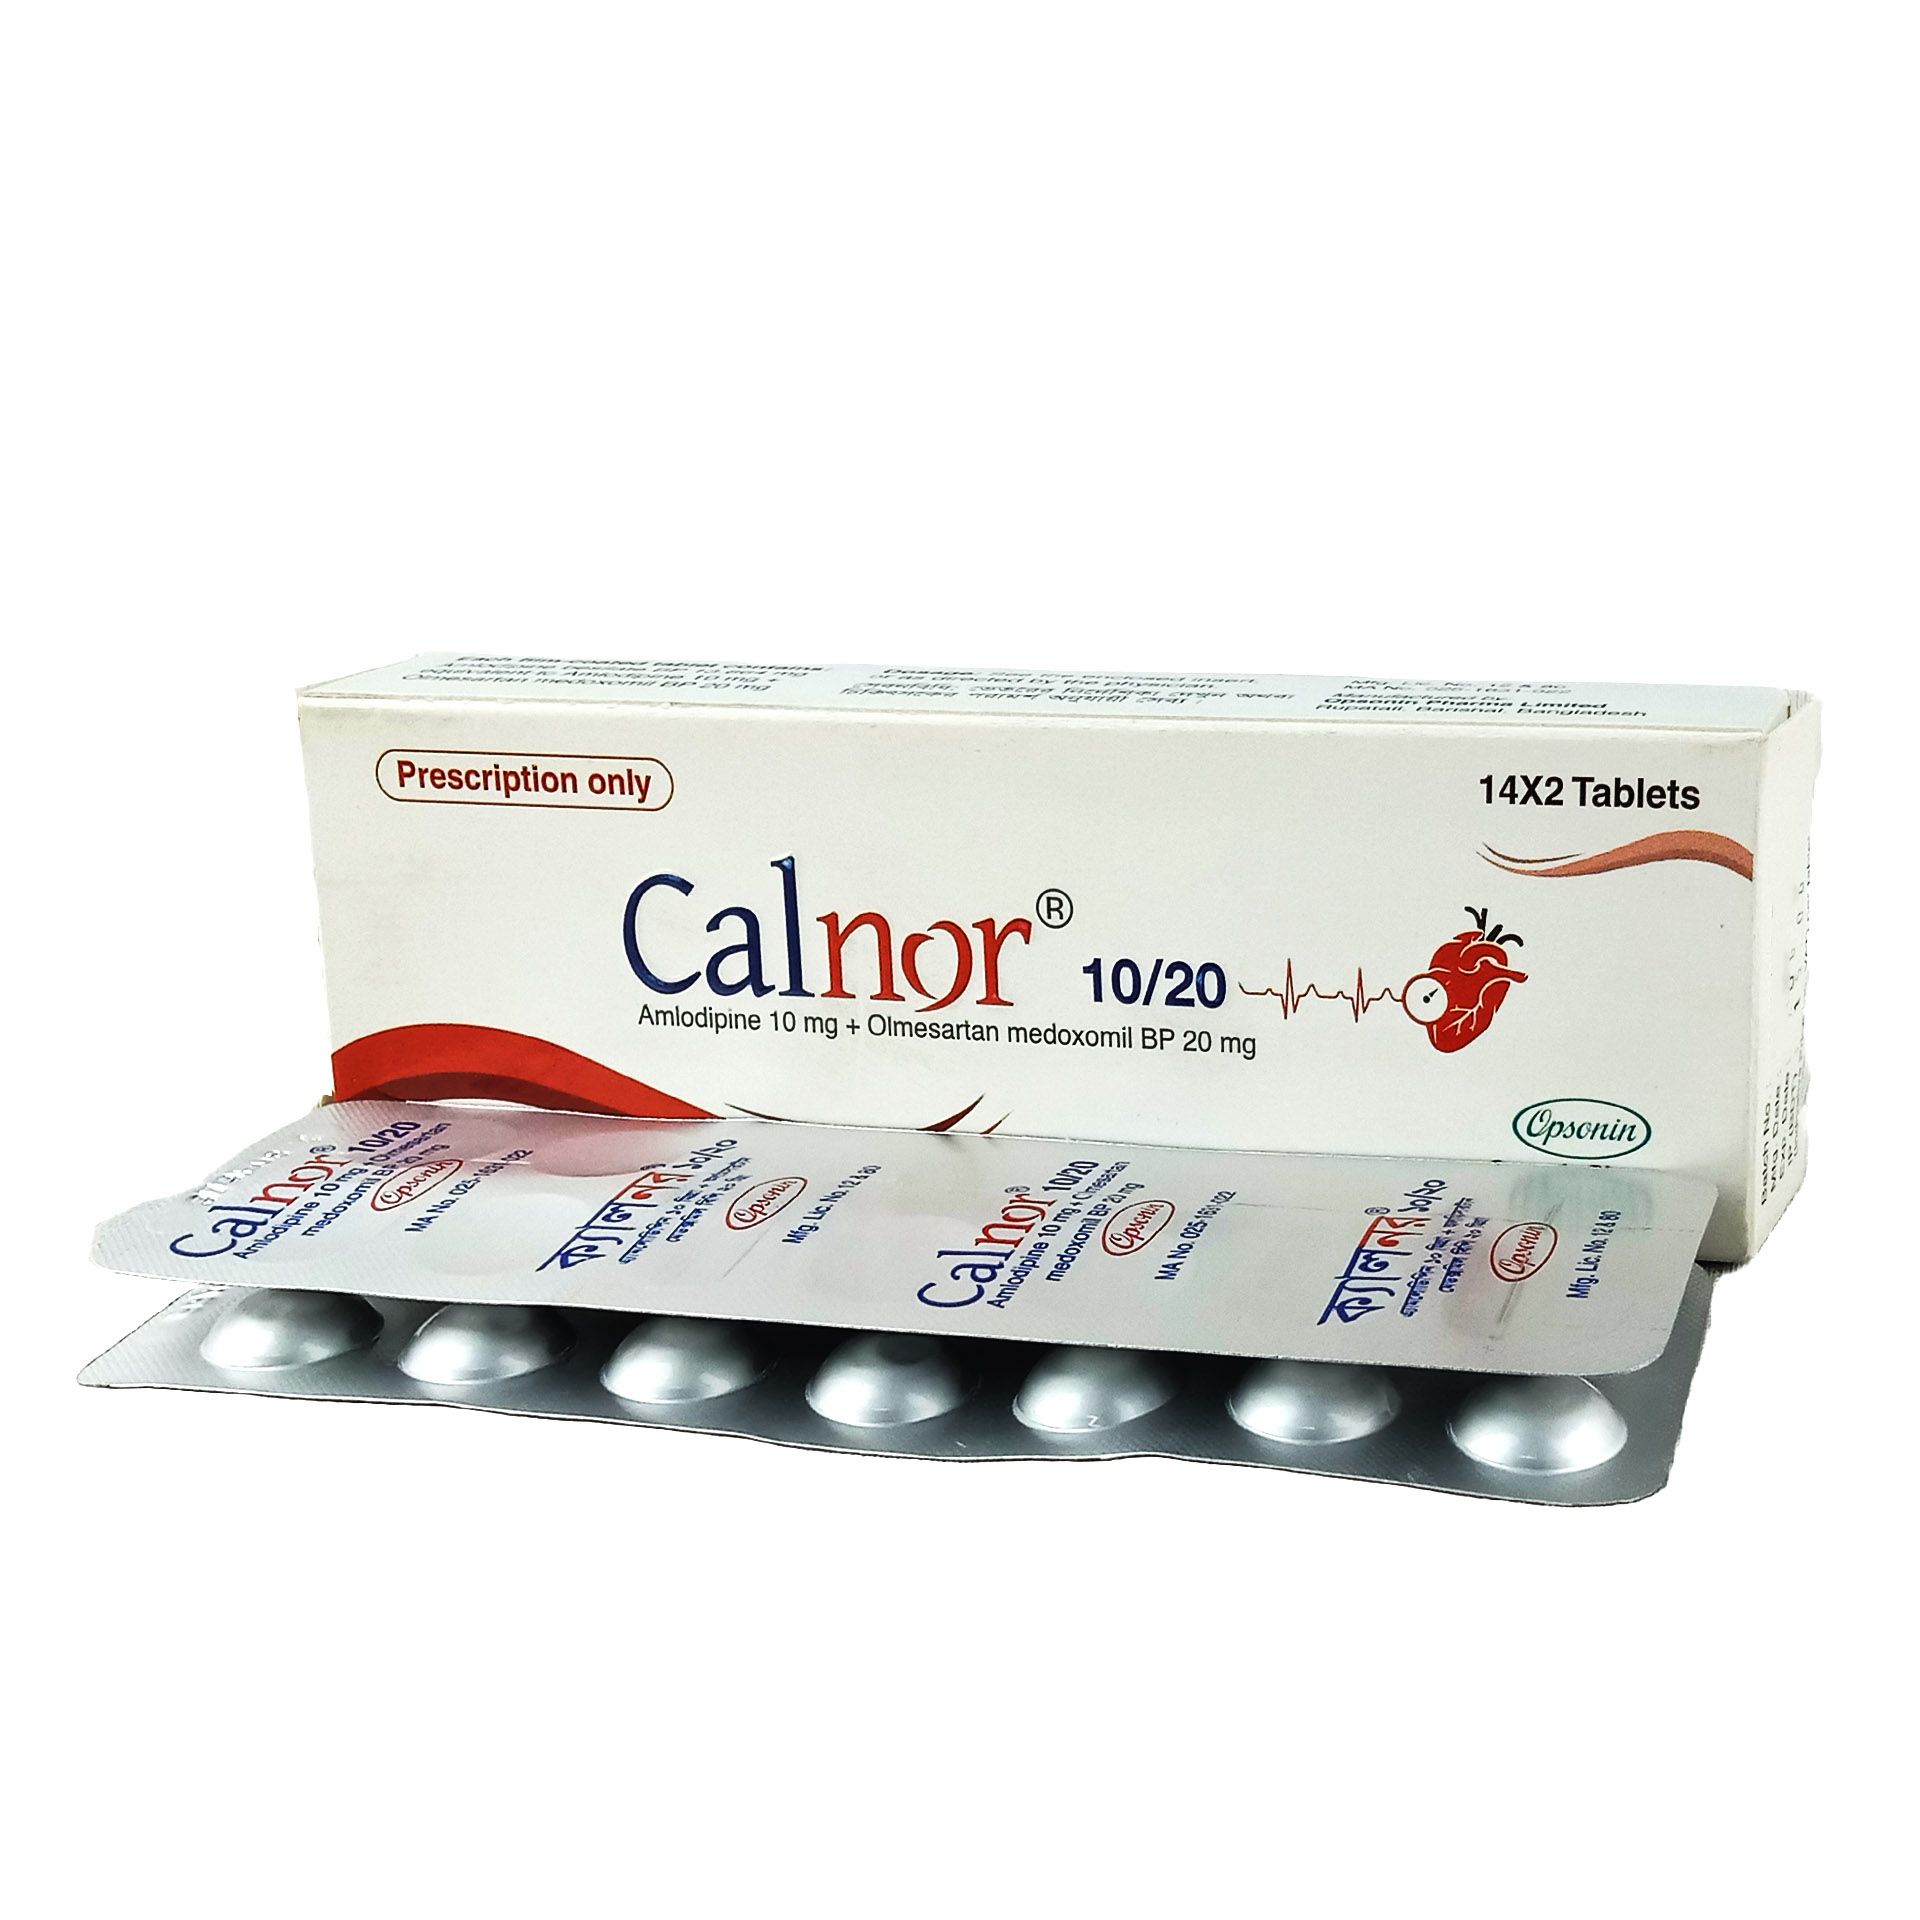 Calnor 10/20 10mg+20mg Tablet